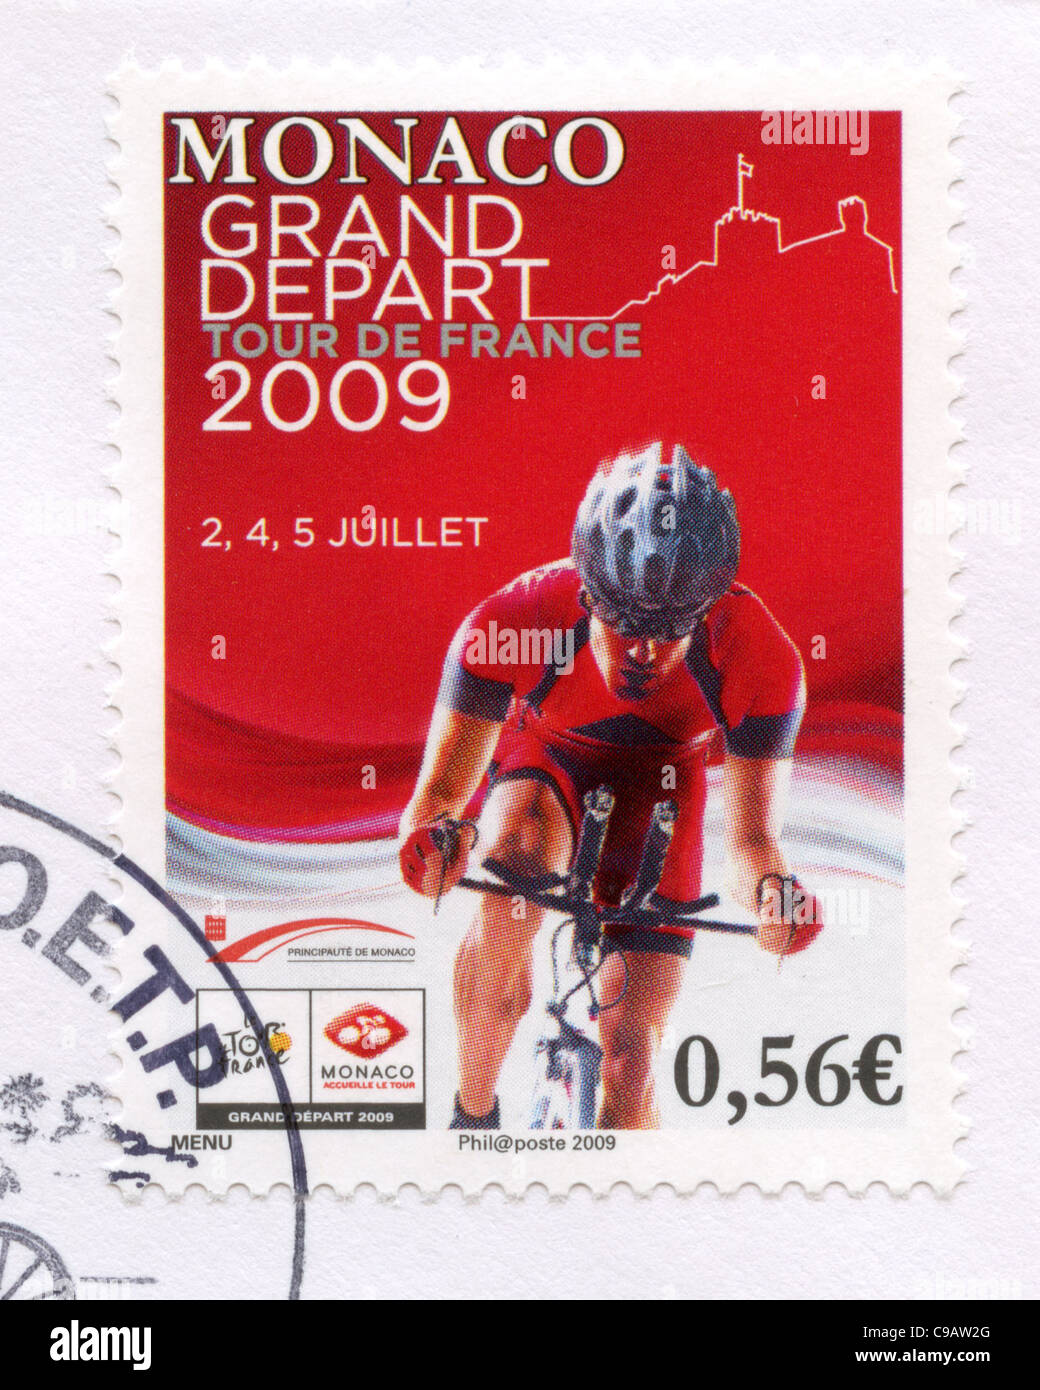 Monaco postage stamp - Tour de France Stock Photo